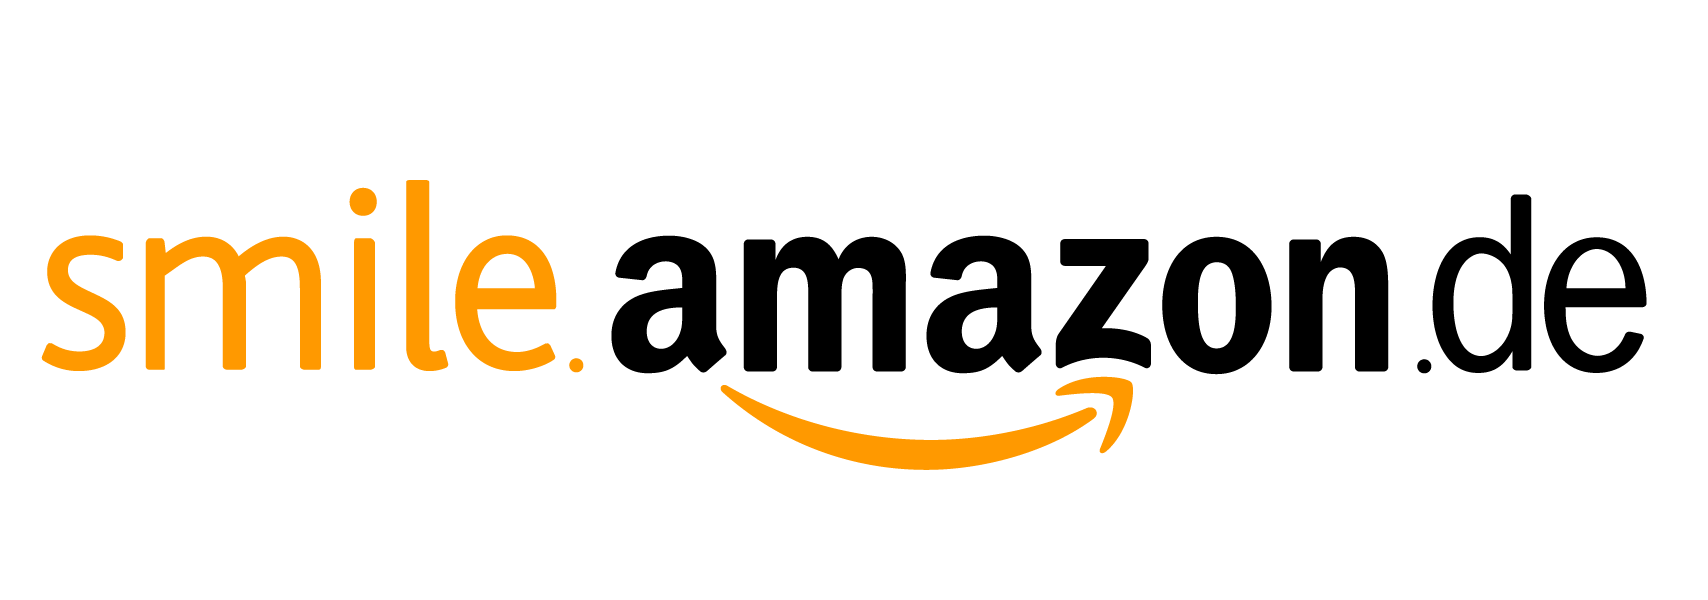 DE AmazonSmile Logo RGB white SMALL ONLY